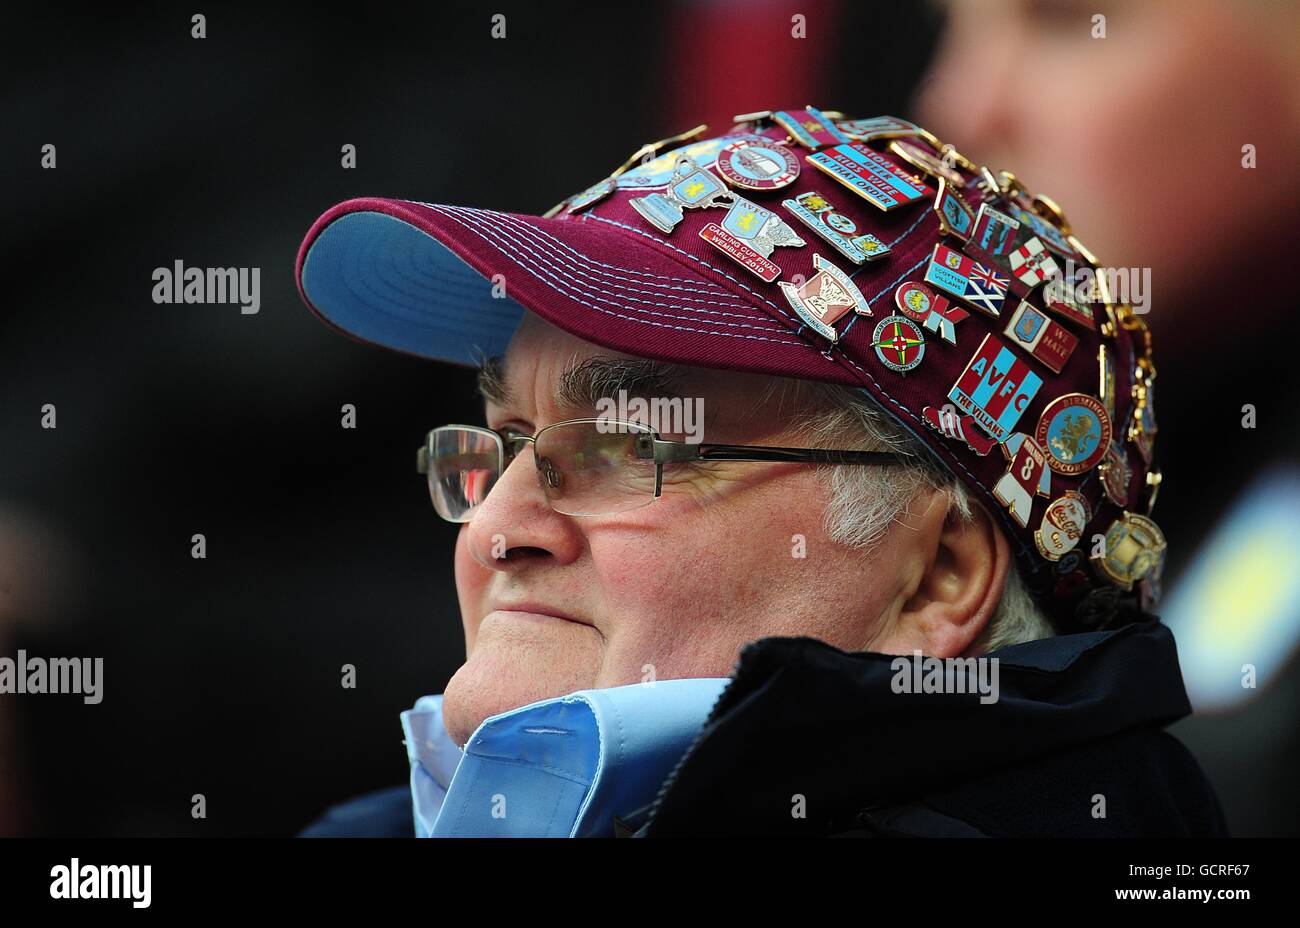 Calcio - Barclays Premier League - Sunderland / Aston Villa - Stadio di luce. Un fan di Aston Villa indossa un cappellino adornato con badge Foto Stock